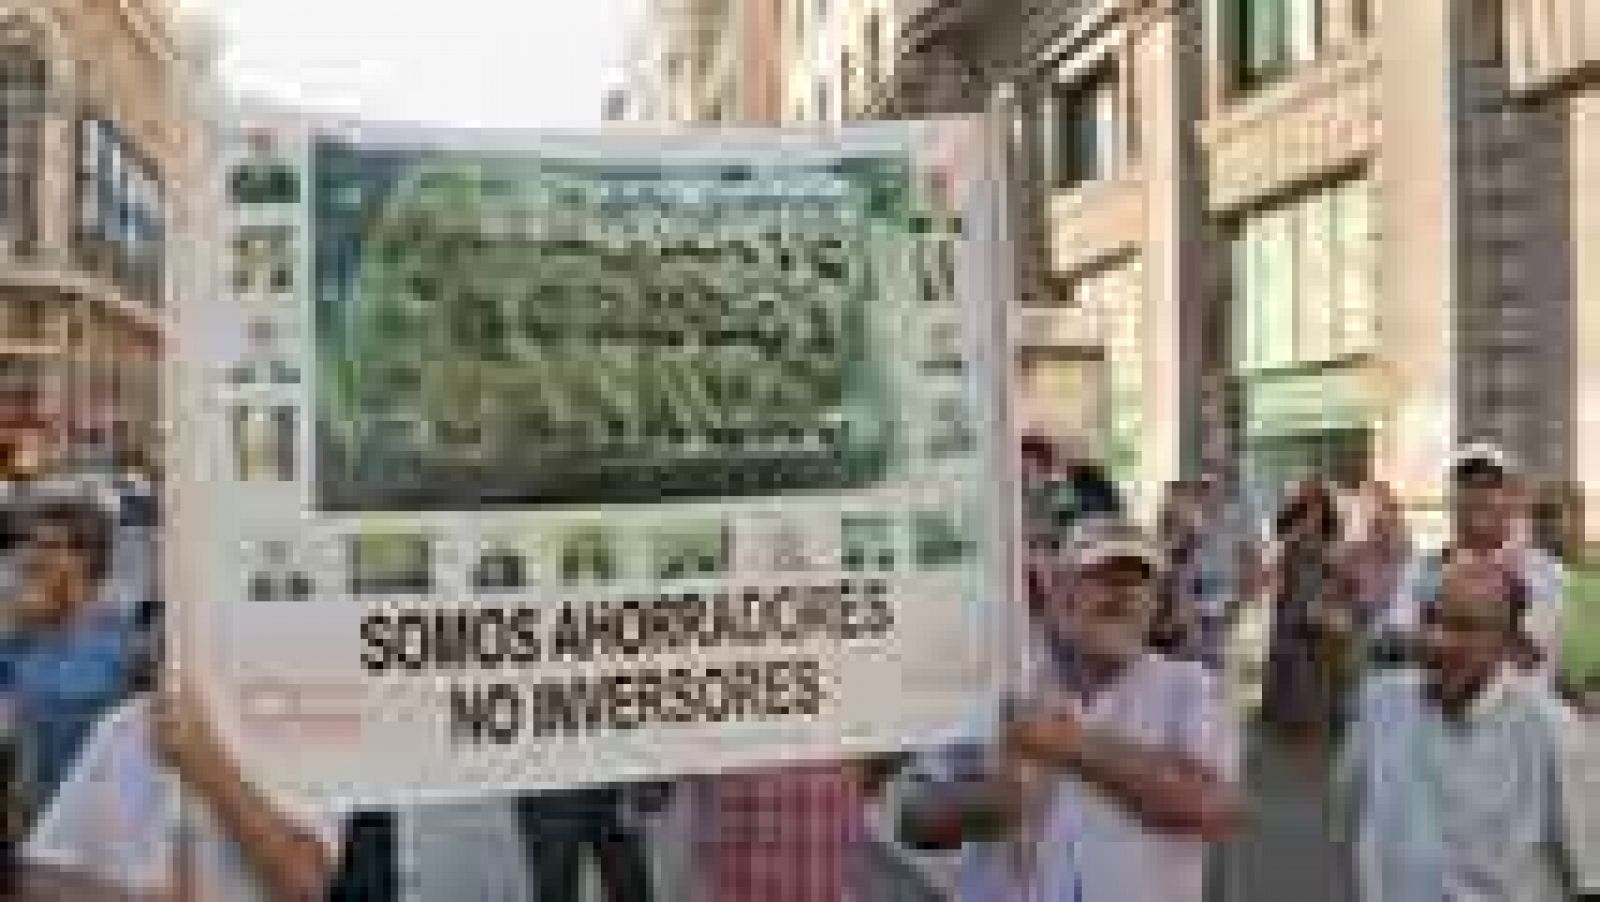 Inversores y accionistas de Bankia exigen la devolución de su dinero y piden responsabilidades